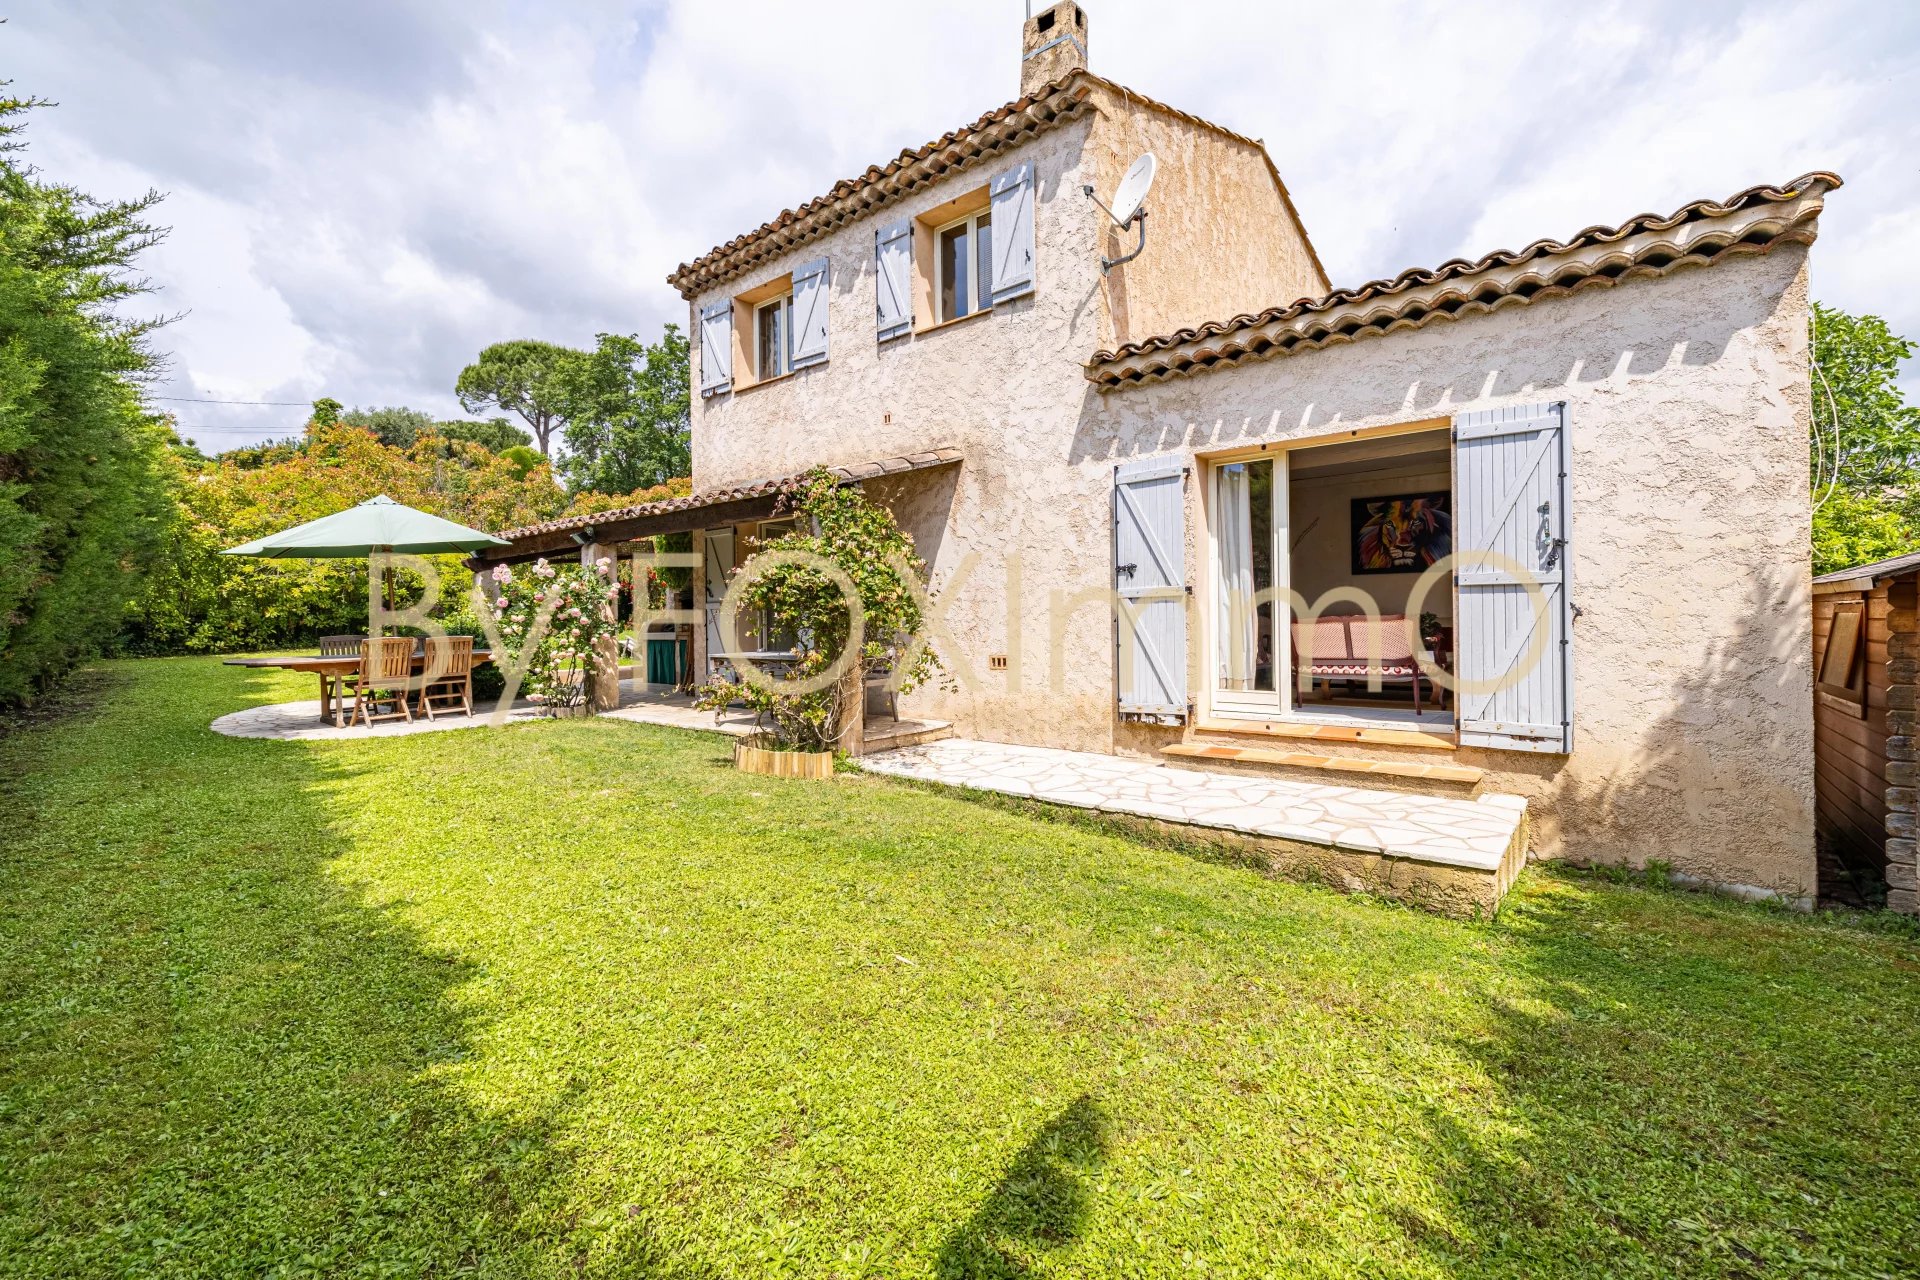 A vendre sur la Côte d'Azur, magnifique maison néo provençale familiale de 5 pièces au calme sur un terrain plat